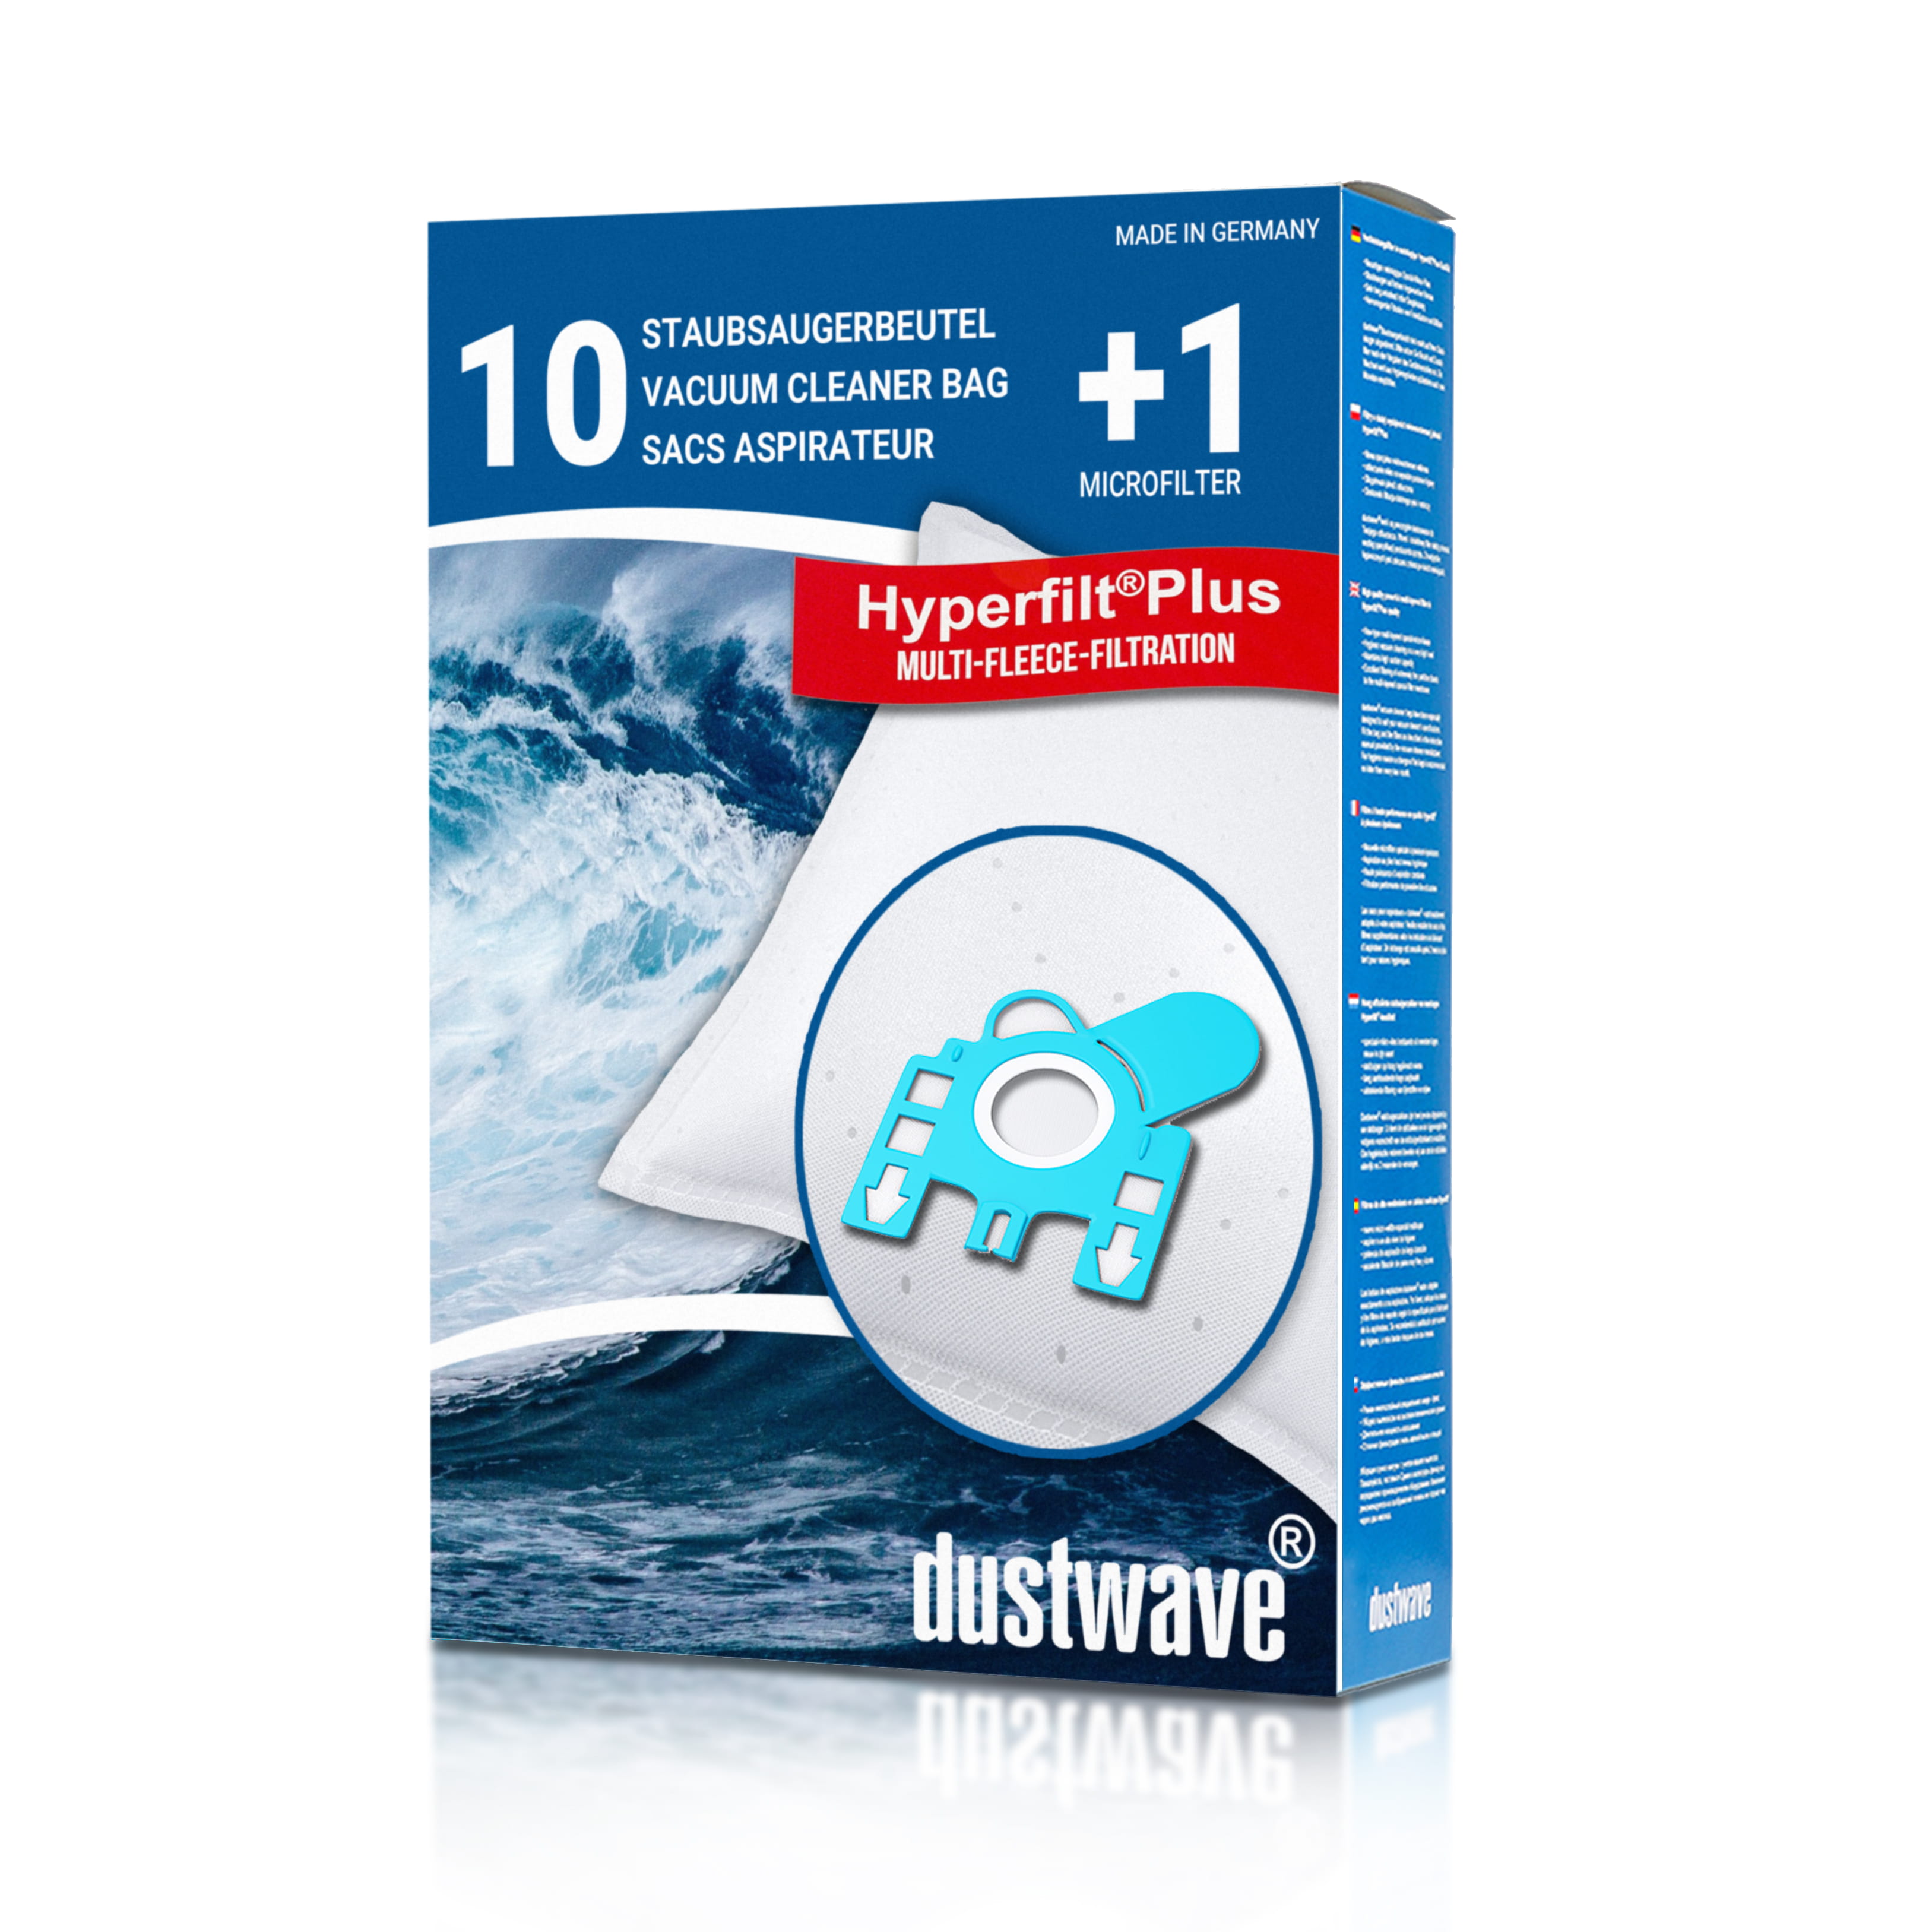 Dustwave® 10 Staubsaugerbeutel für Hoover TFB211 / TRTFB211 013 FreeMotion - hocheffizient, mehrlagiges Mikrovlies mit Hygieneverschluss - Made in Germany